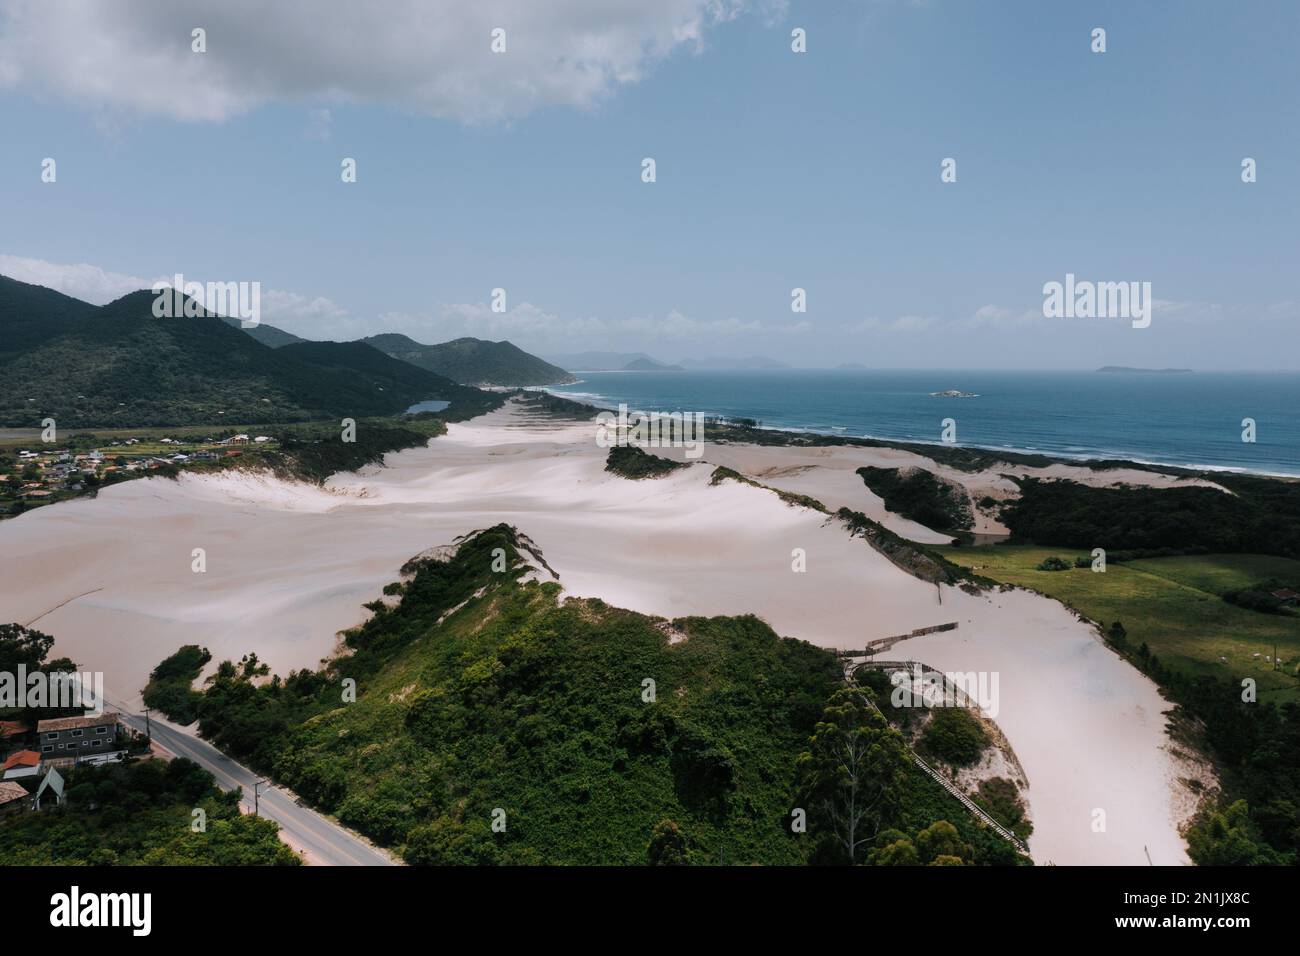 Die Dünen von Siriú. Dunas do Siriú Garapaba. Drohnenaufnahme von Dünen aus Sand dirket am Meer. Sand und grüne Landschaft 2 Stock Photo